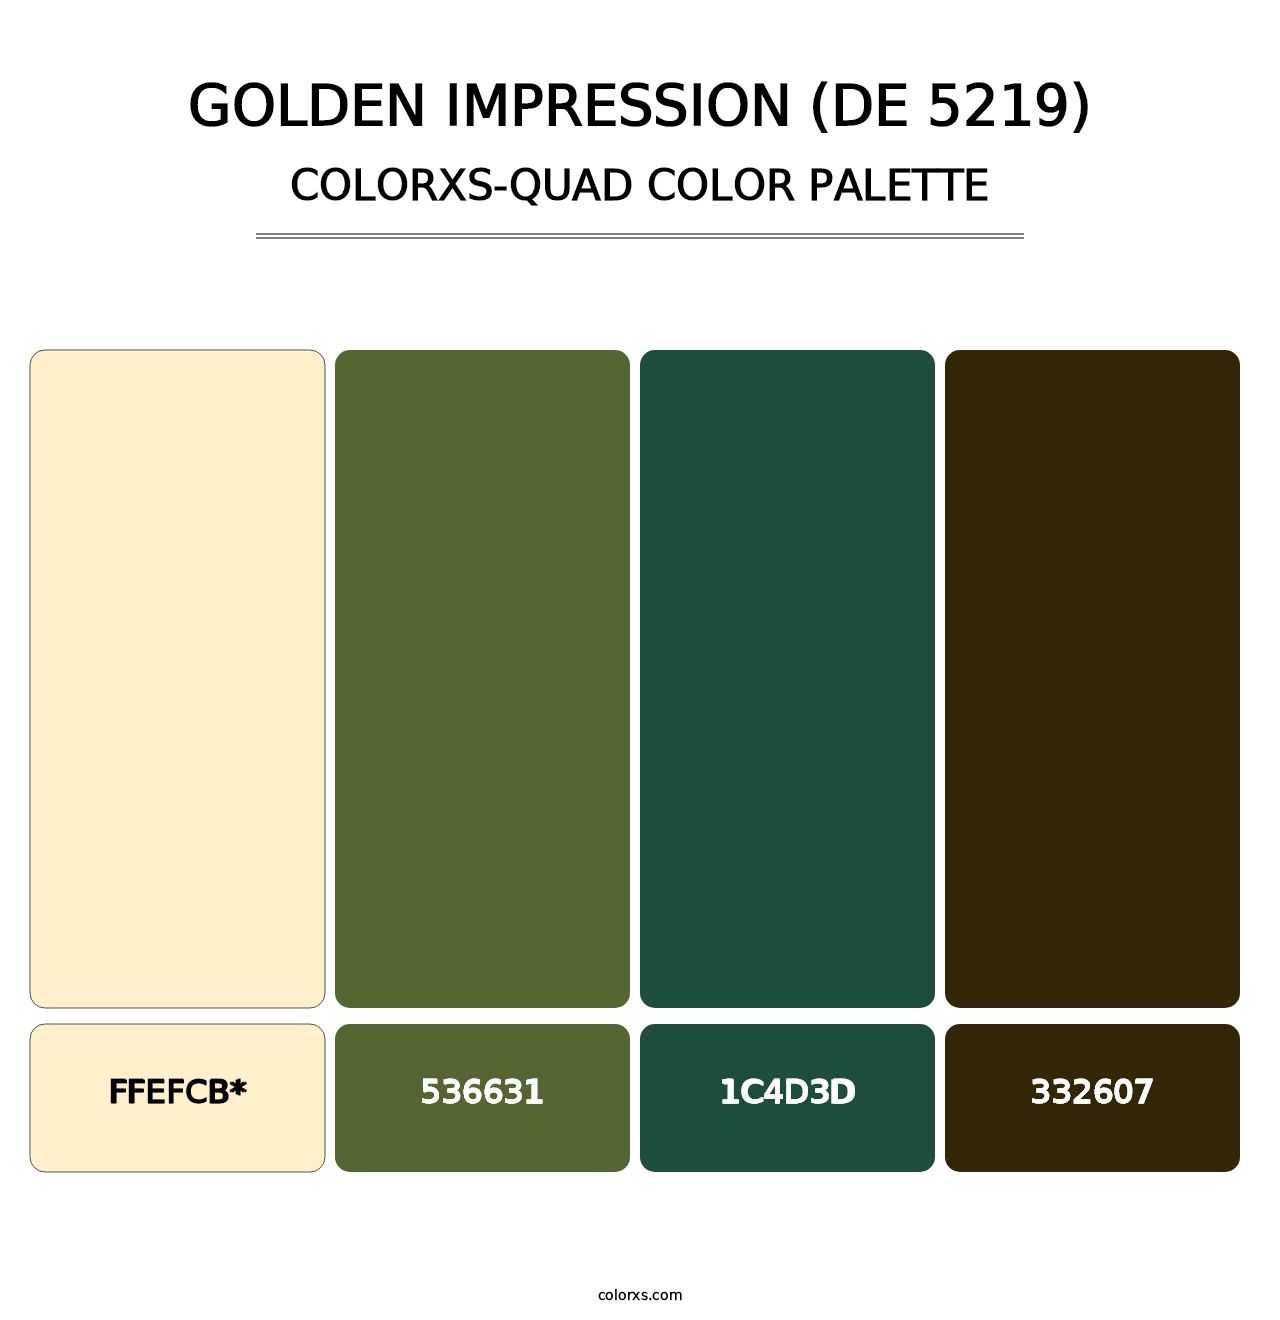 Golden Impression (DE 5219) - Colorxs Quad Palette